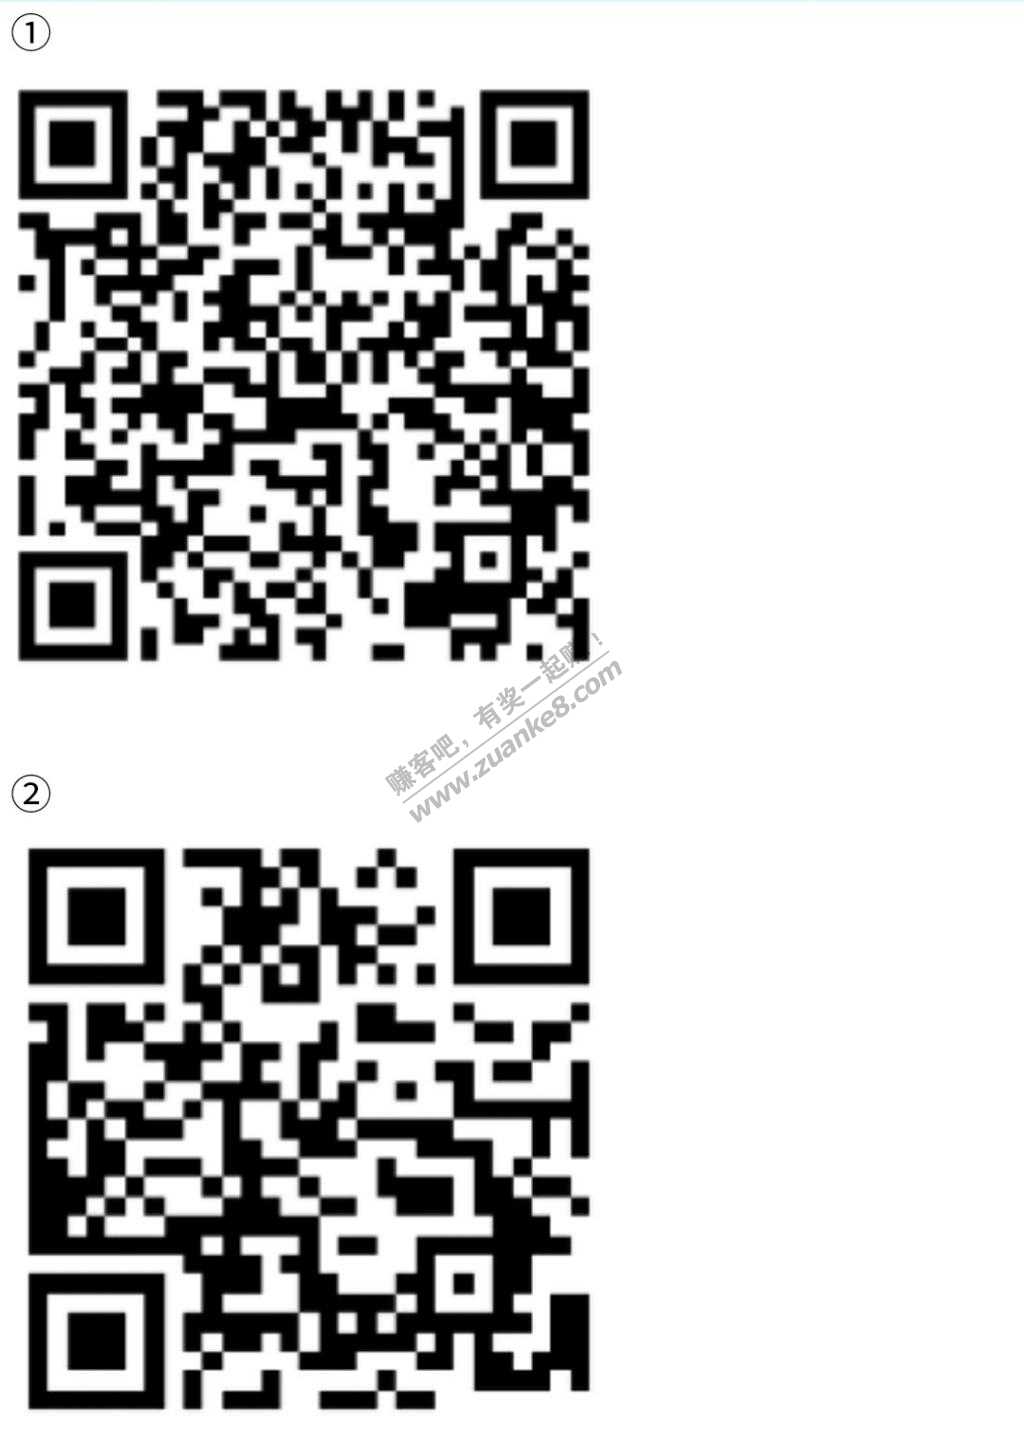 线报-「微信扫码」第3个和第4个活动顺丰寄大件的券;第5个是德玛快递的券-惠小助(52huixz.com)